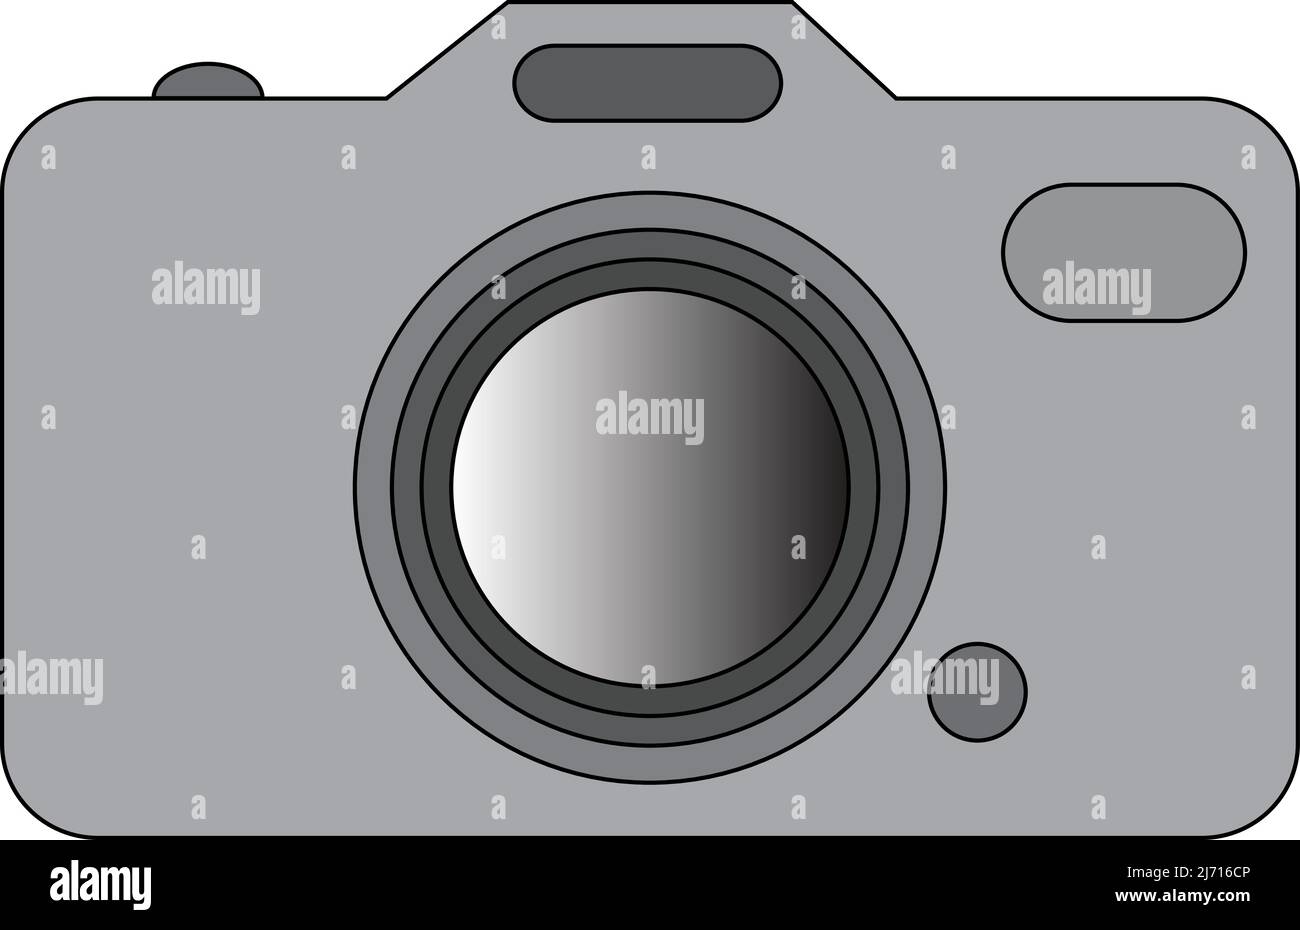 Abbildung eines Fotokamerasymbols. Mit weißem Hintergrund Stock Vektor